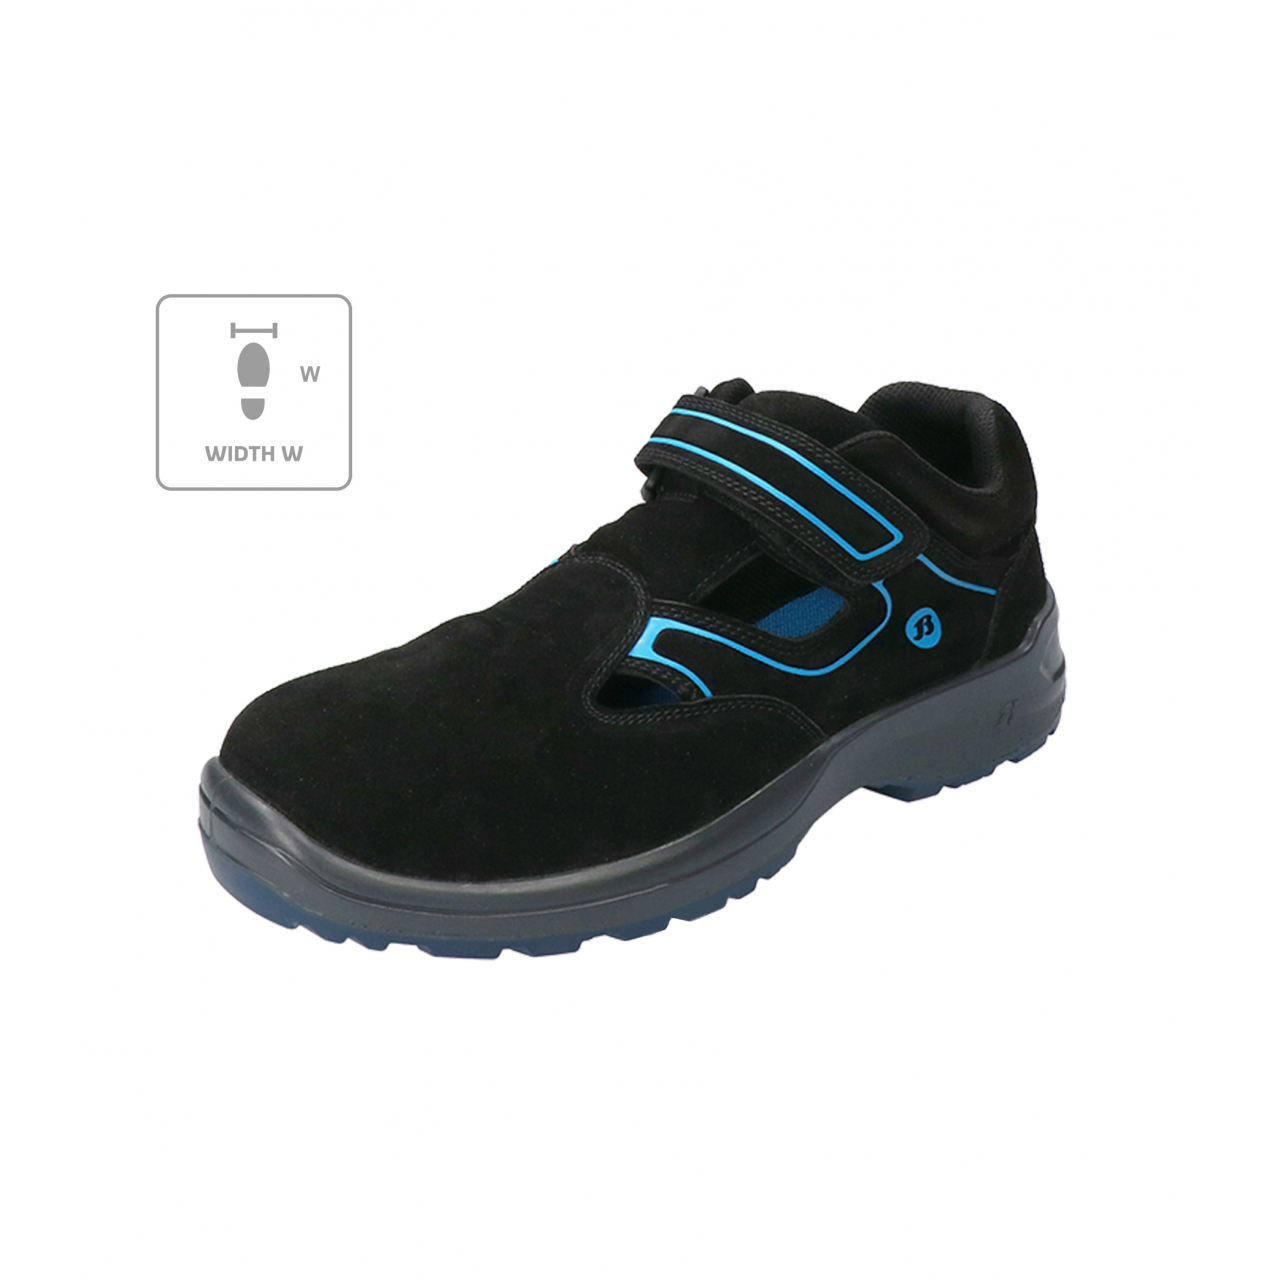 Sandále Bata Industrials Falcon ESD W - černé-modré, 42